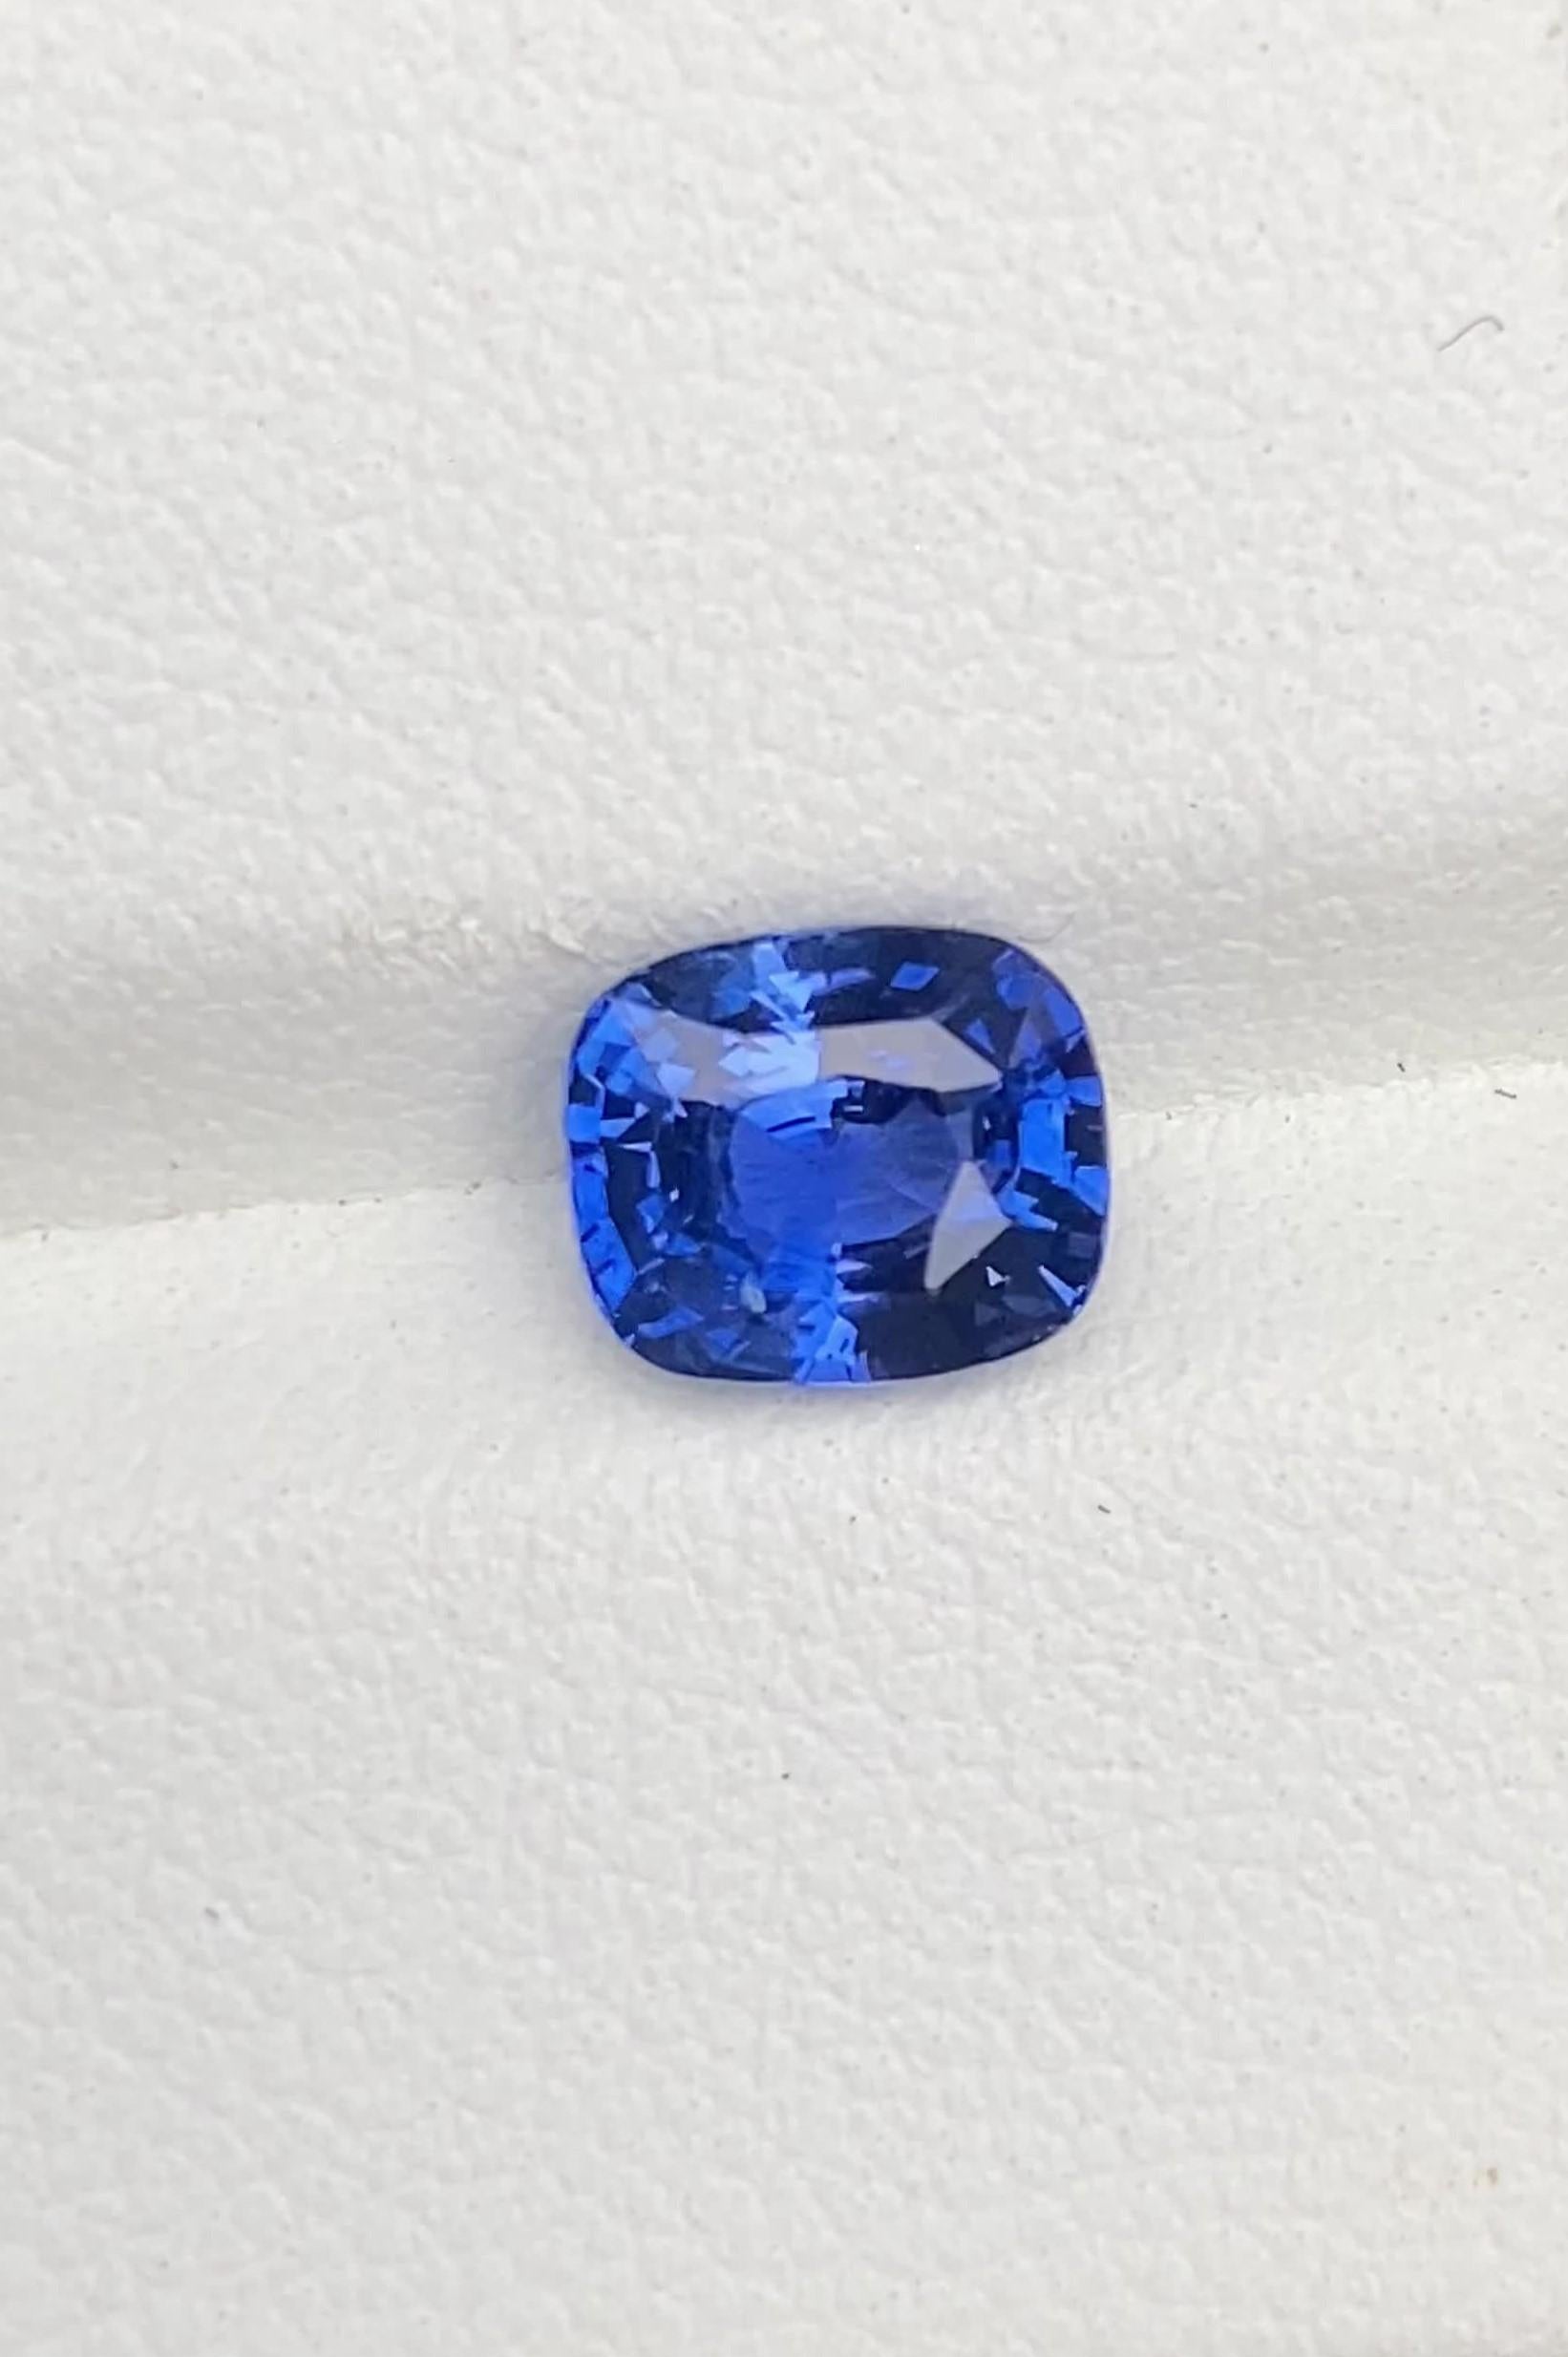 Saphir in natürlicher Qualität, Dieser exquisite Edelstein stammt aus Ceylon (Sri Lanka), das für die Herstellung von Steinen außergewöhnlicher Qualität bekannt ist. Mit seiner innerlich makellosen Klarheit.

- • Sorte: Blauer Saphir 
- • Herkunft: